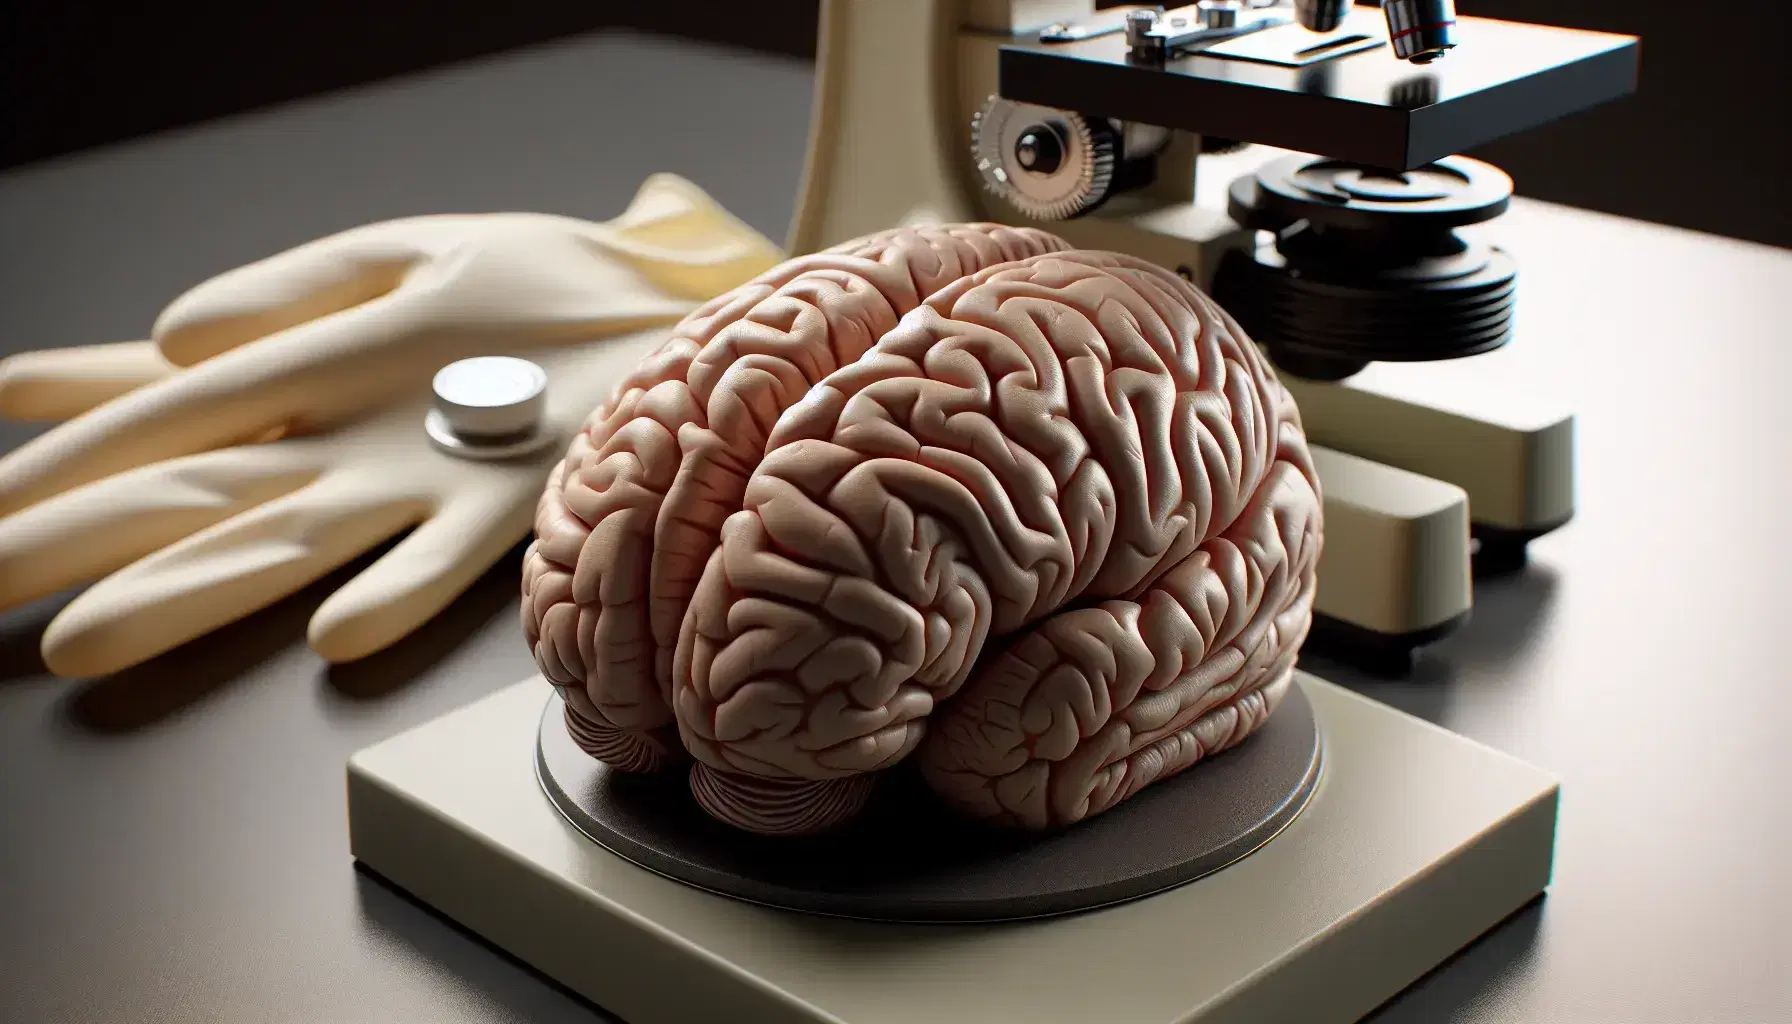 Modelo anatómico detallado de cerebro humano en 3D sobre superficie neutra con microscopio y guantes de látex en fondo desenfocado, enfatizando estudio en neurología.